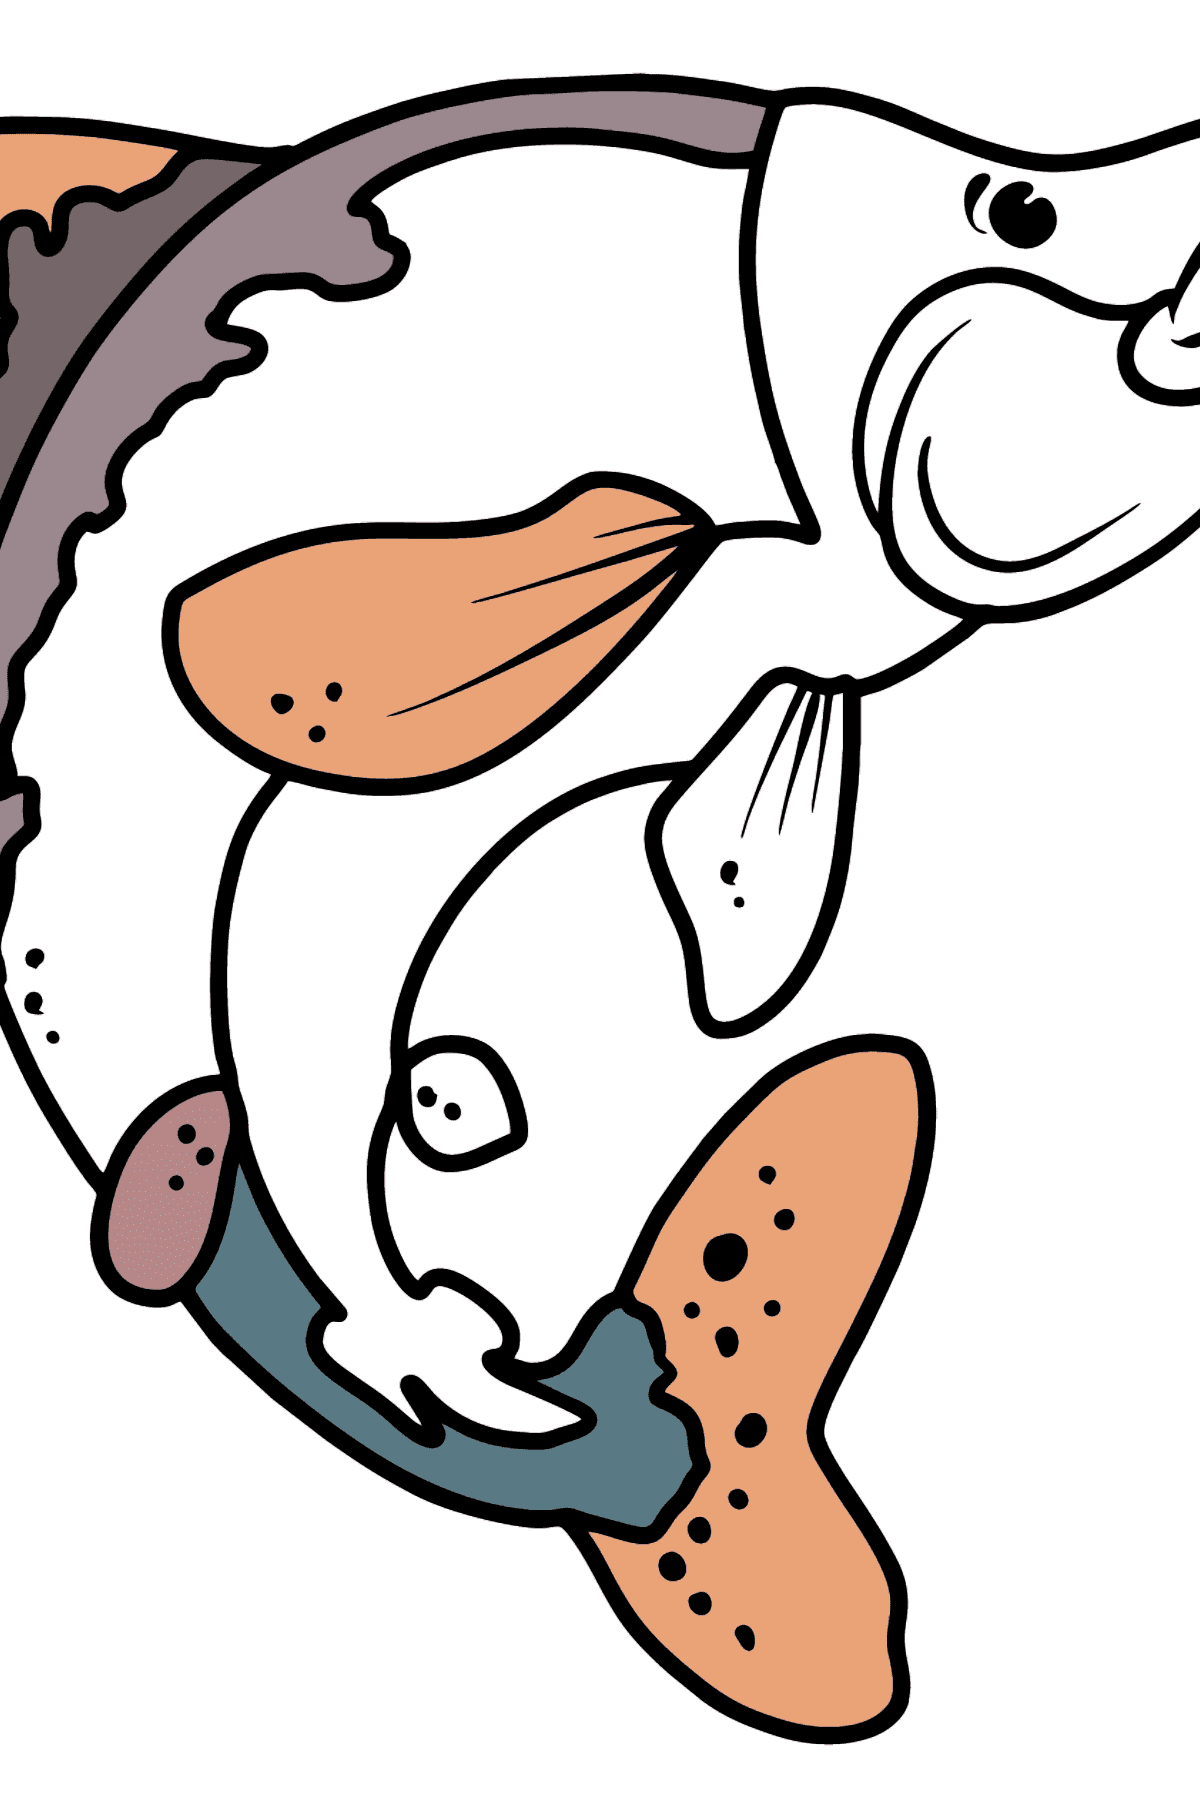 Dibujo de salmón para colorear - Dibujos para Colorear para Niños